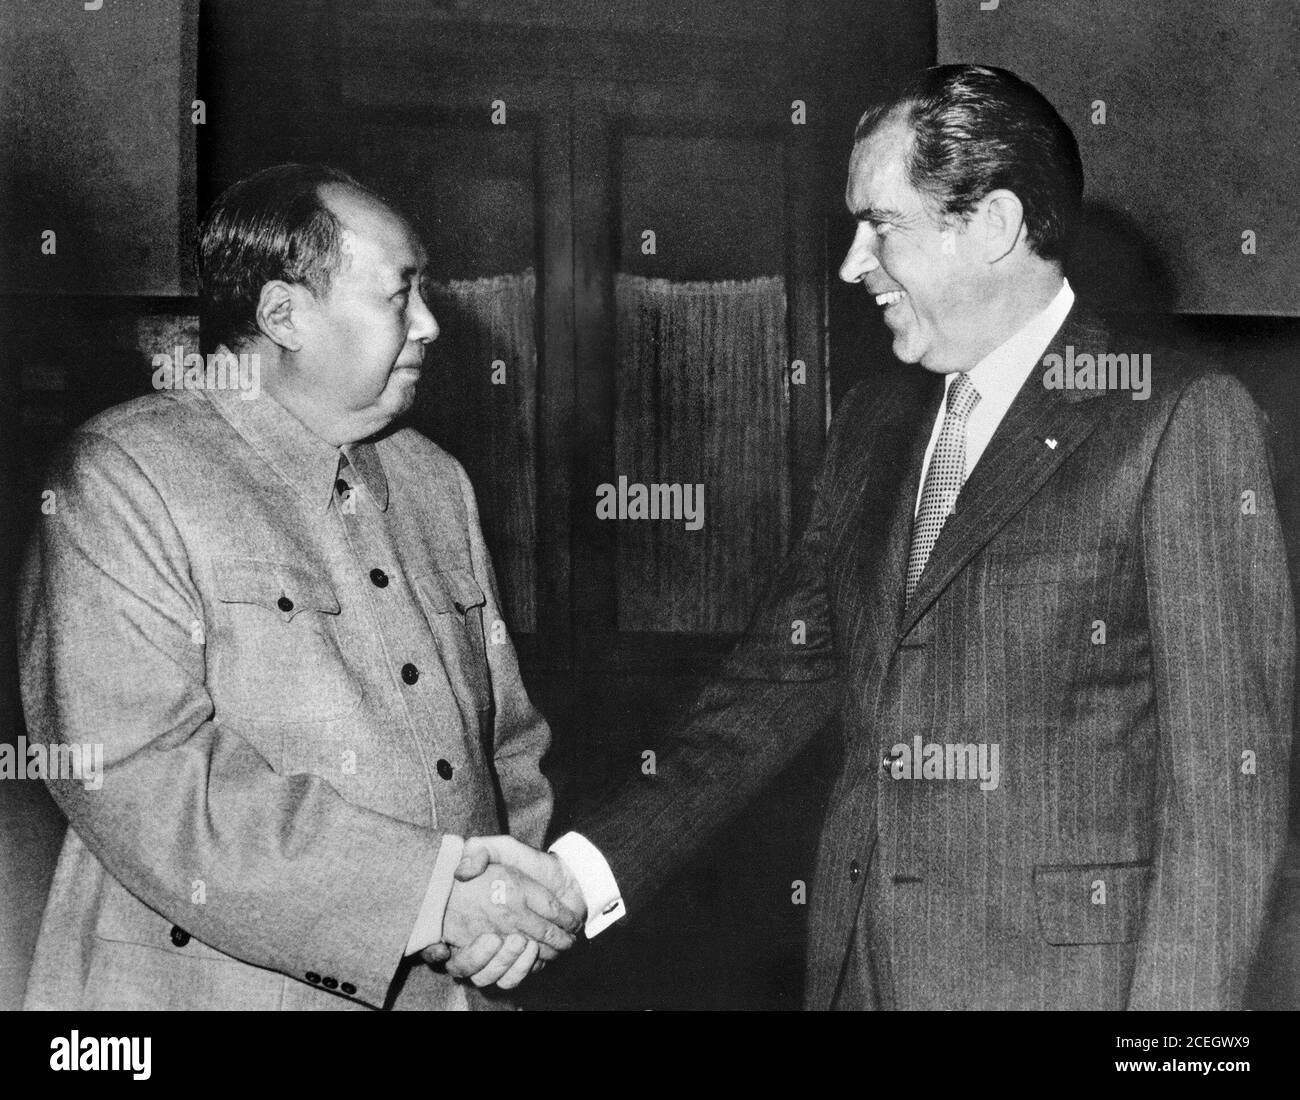 Mao und Nixon. US-Präsident Richard Nixon schüttelt dem Vorsitzenden der Kommunistischen Partei Chinas, Mao Zedong, die Hände. Das Foto wurde während Nixons historischer Reise nach China 1972 aufgenommen. Stockfoto